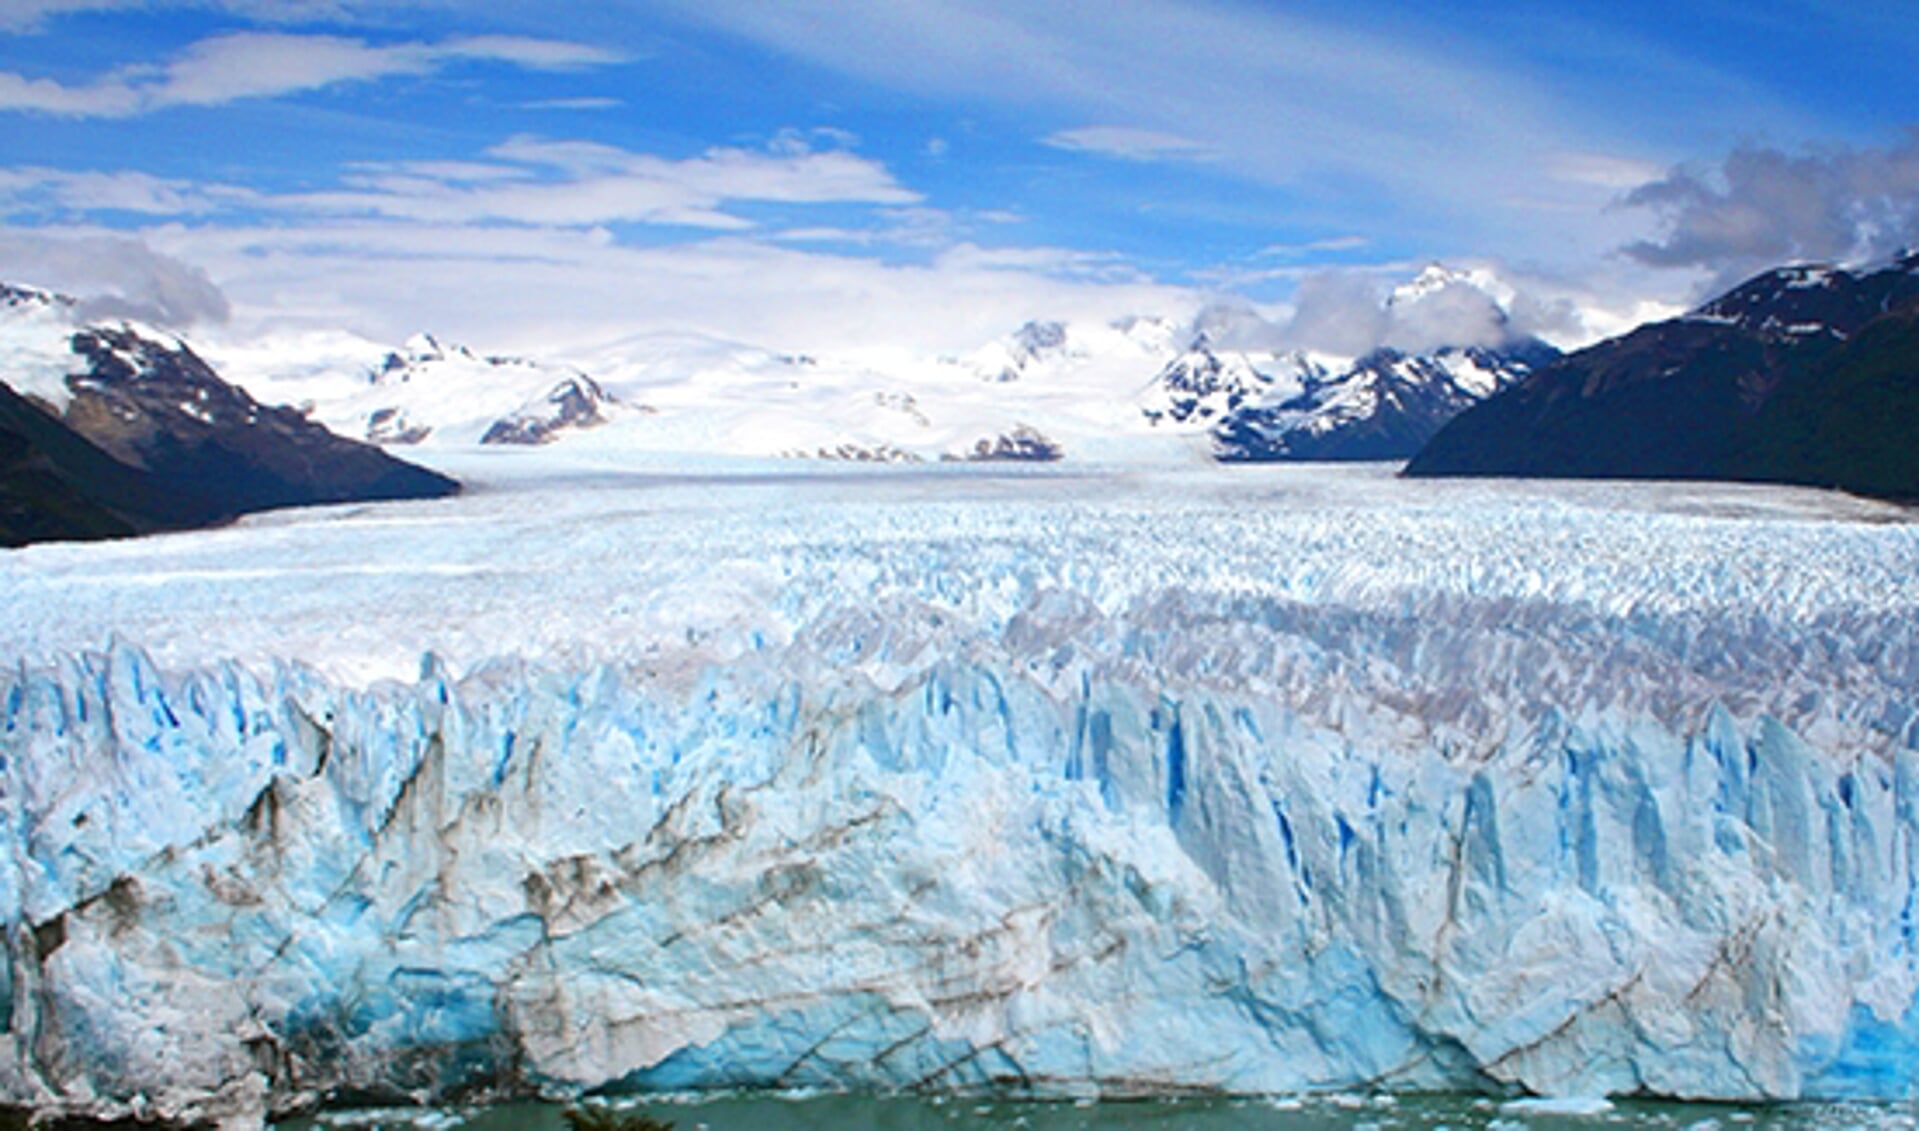 Perito Moreno gletsjer, Patagonië, Argentinië 